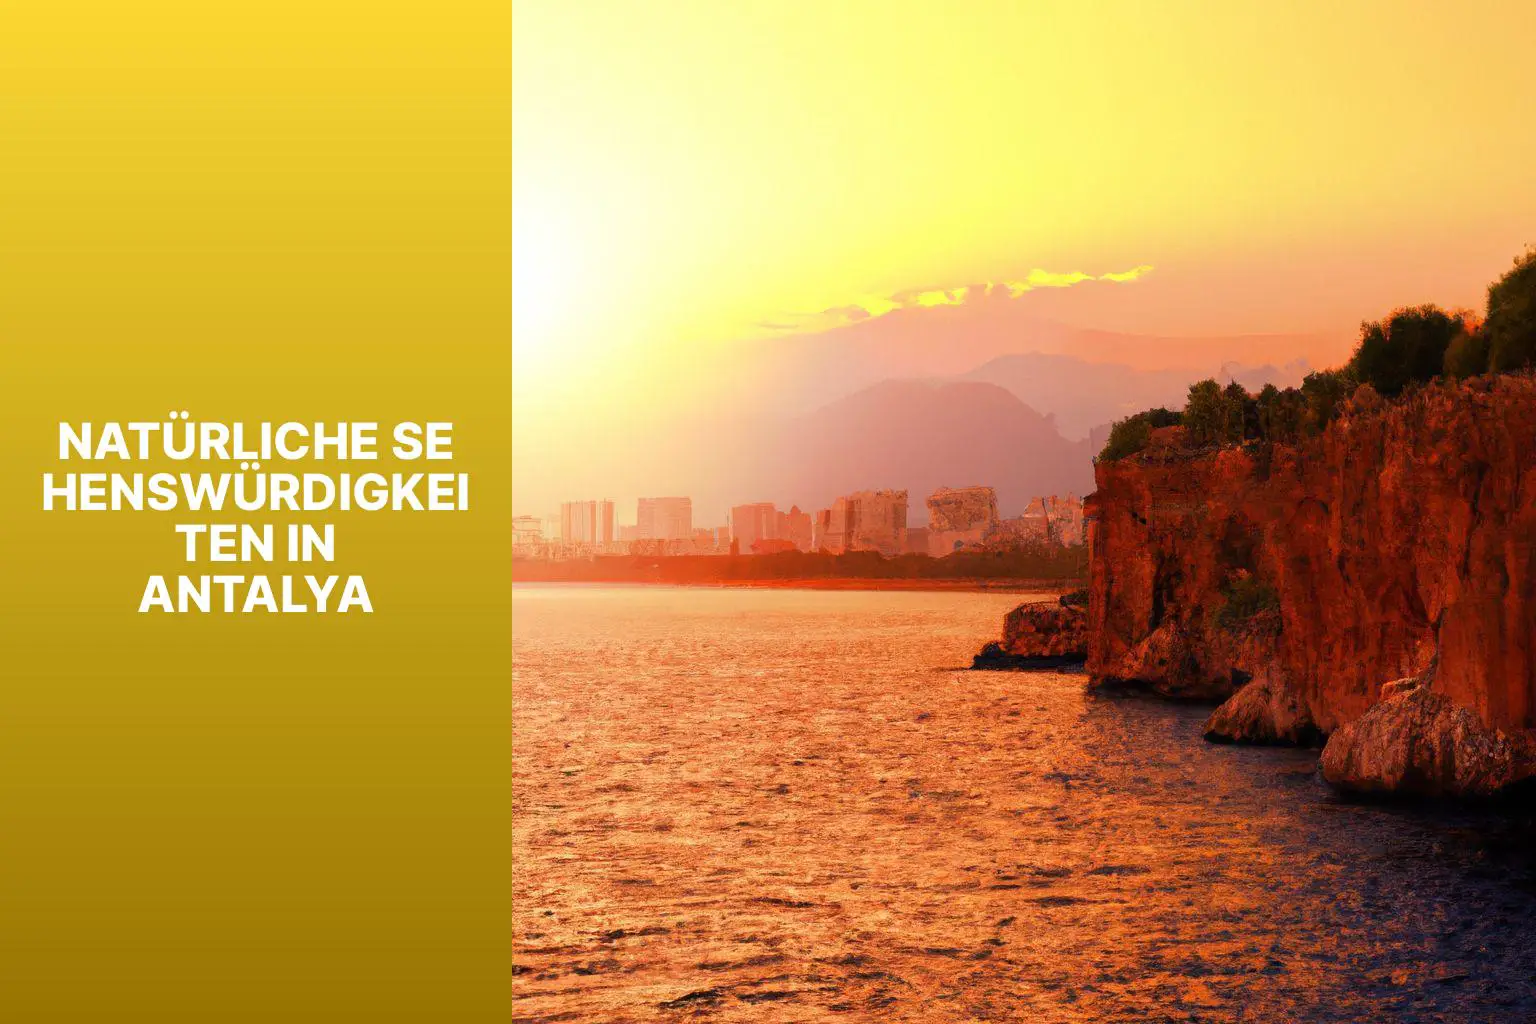 Natürliche Sehenswürdigkeiten in Antalya - Antalya Sehenswürdigkeiten 